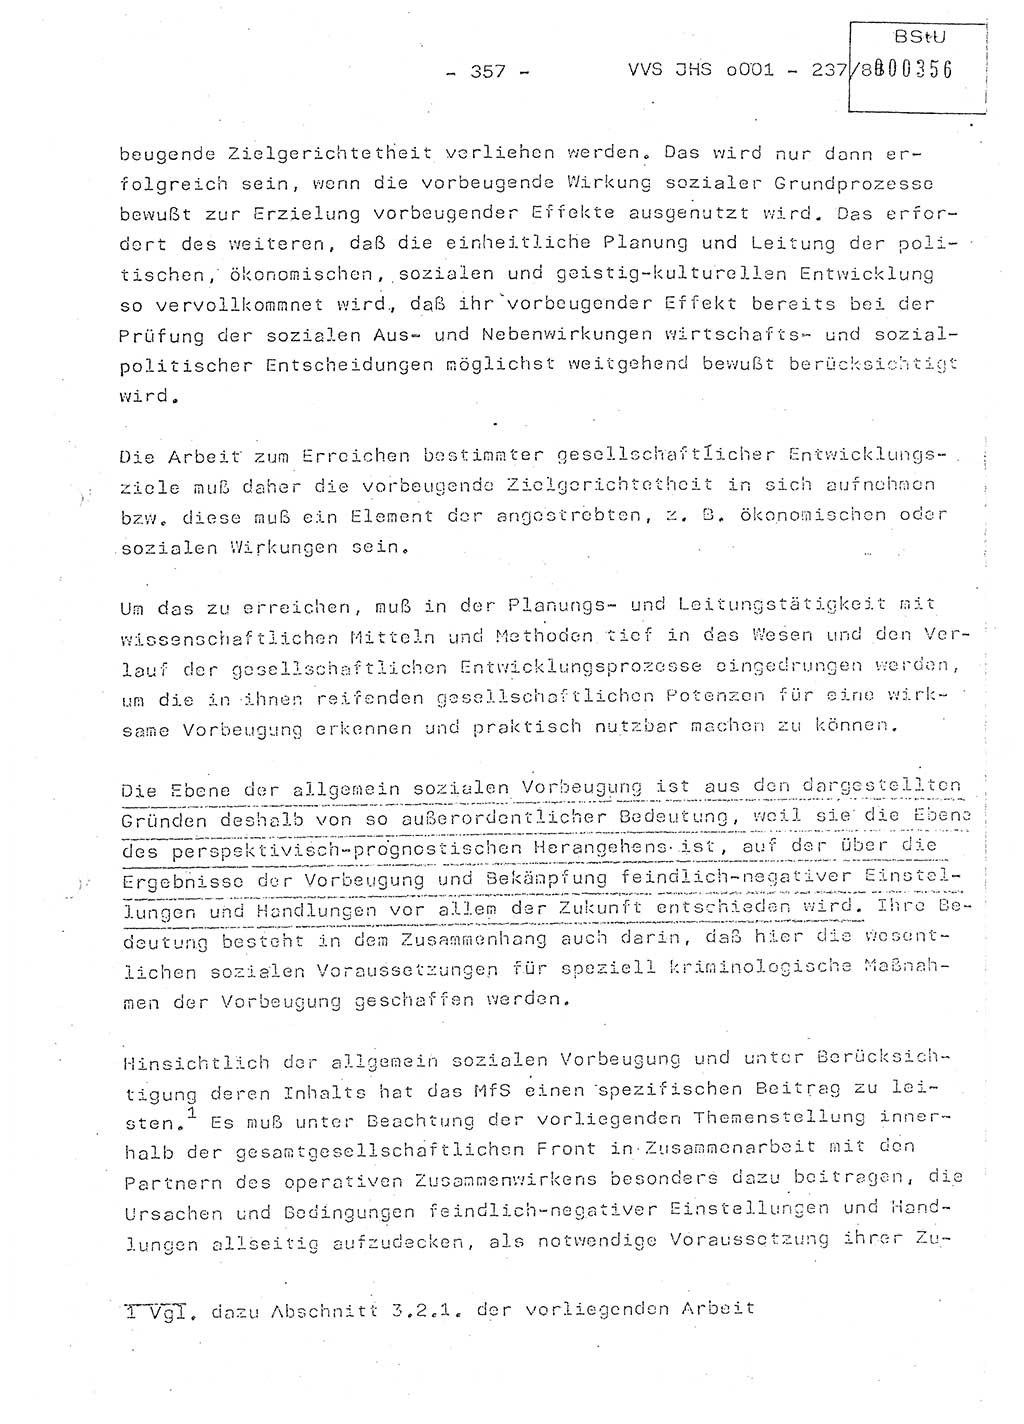 Dissertation Oberstleutnant Peter Jakulski (JHS), Oberstleutnat Christian Rudolph (HA Ⅸ), Major Horst Böttger (ZMD), Major Wolfgang Grüneberg (JHS), Major Albert Meutsch (JHS), Ministerium für Staatssicherheit (MfS) [Deutsche Demokratische Republik (DDR)], Juristische Hochschule (JHS), Vertrauliche Verschlußsache (VVS) o001-237/85, Potsdam 1985, Seite 357 (Diss. MfS DDR JHS VVS o001-237/85 1985, S. 357)